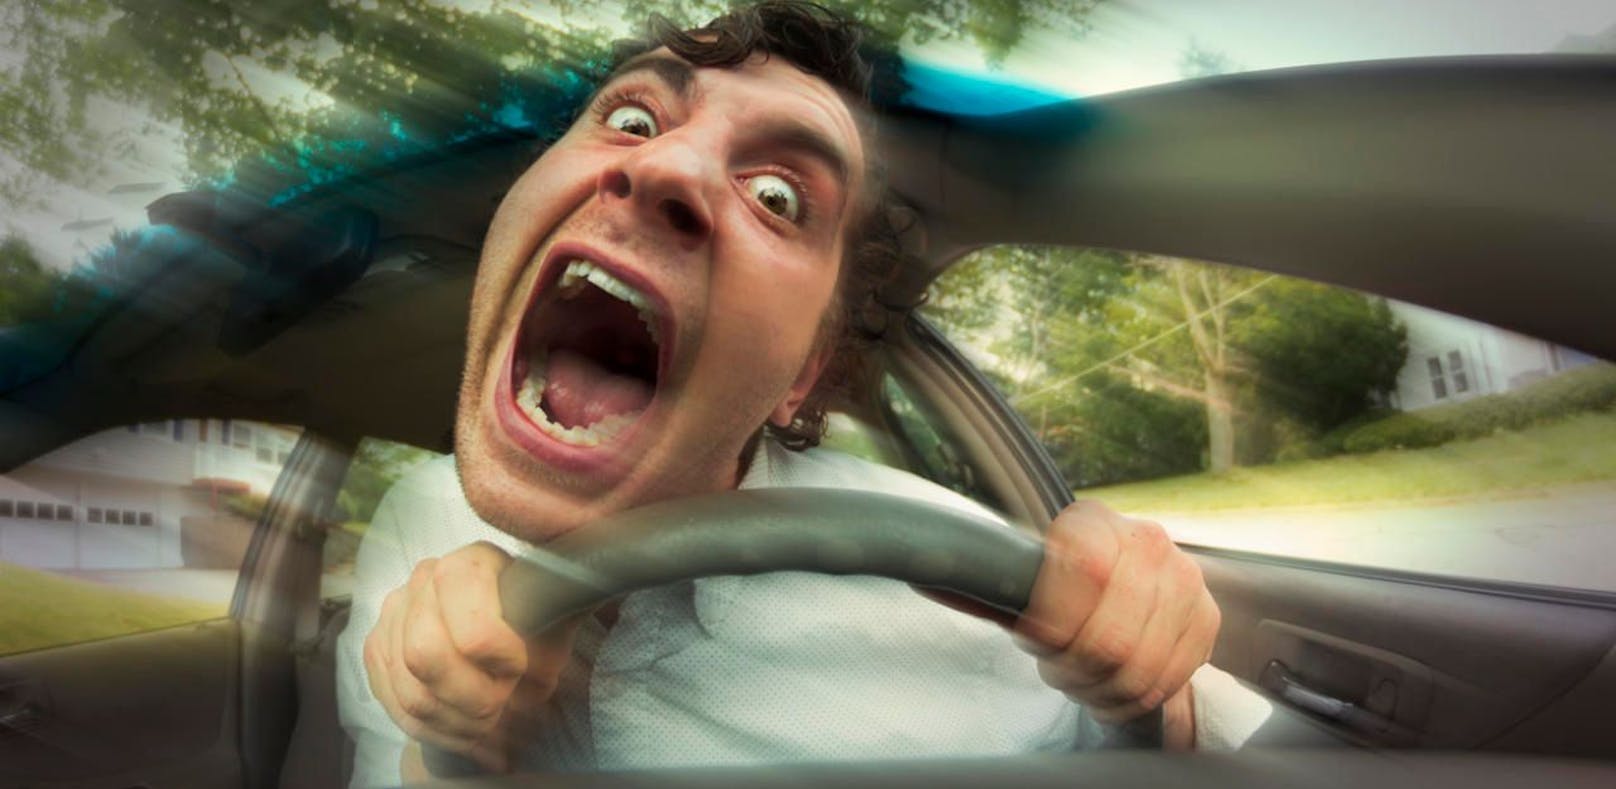 Das sind die gefährlichsten Songs beim Autofahren